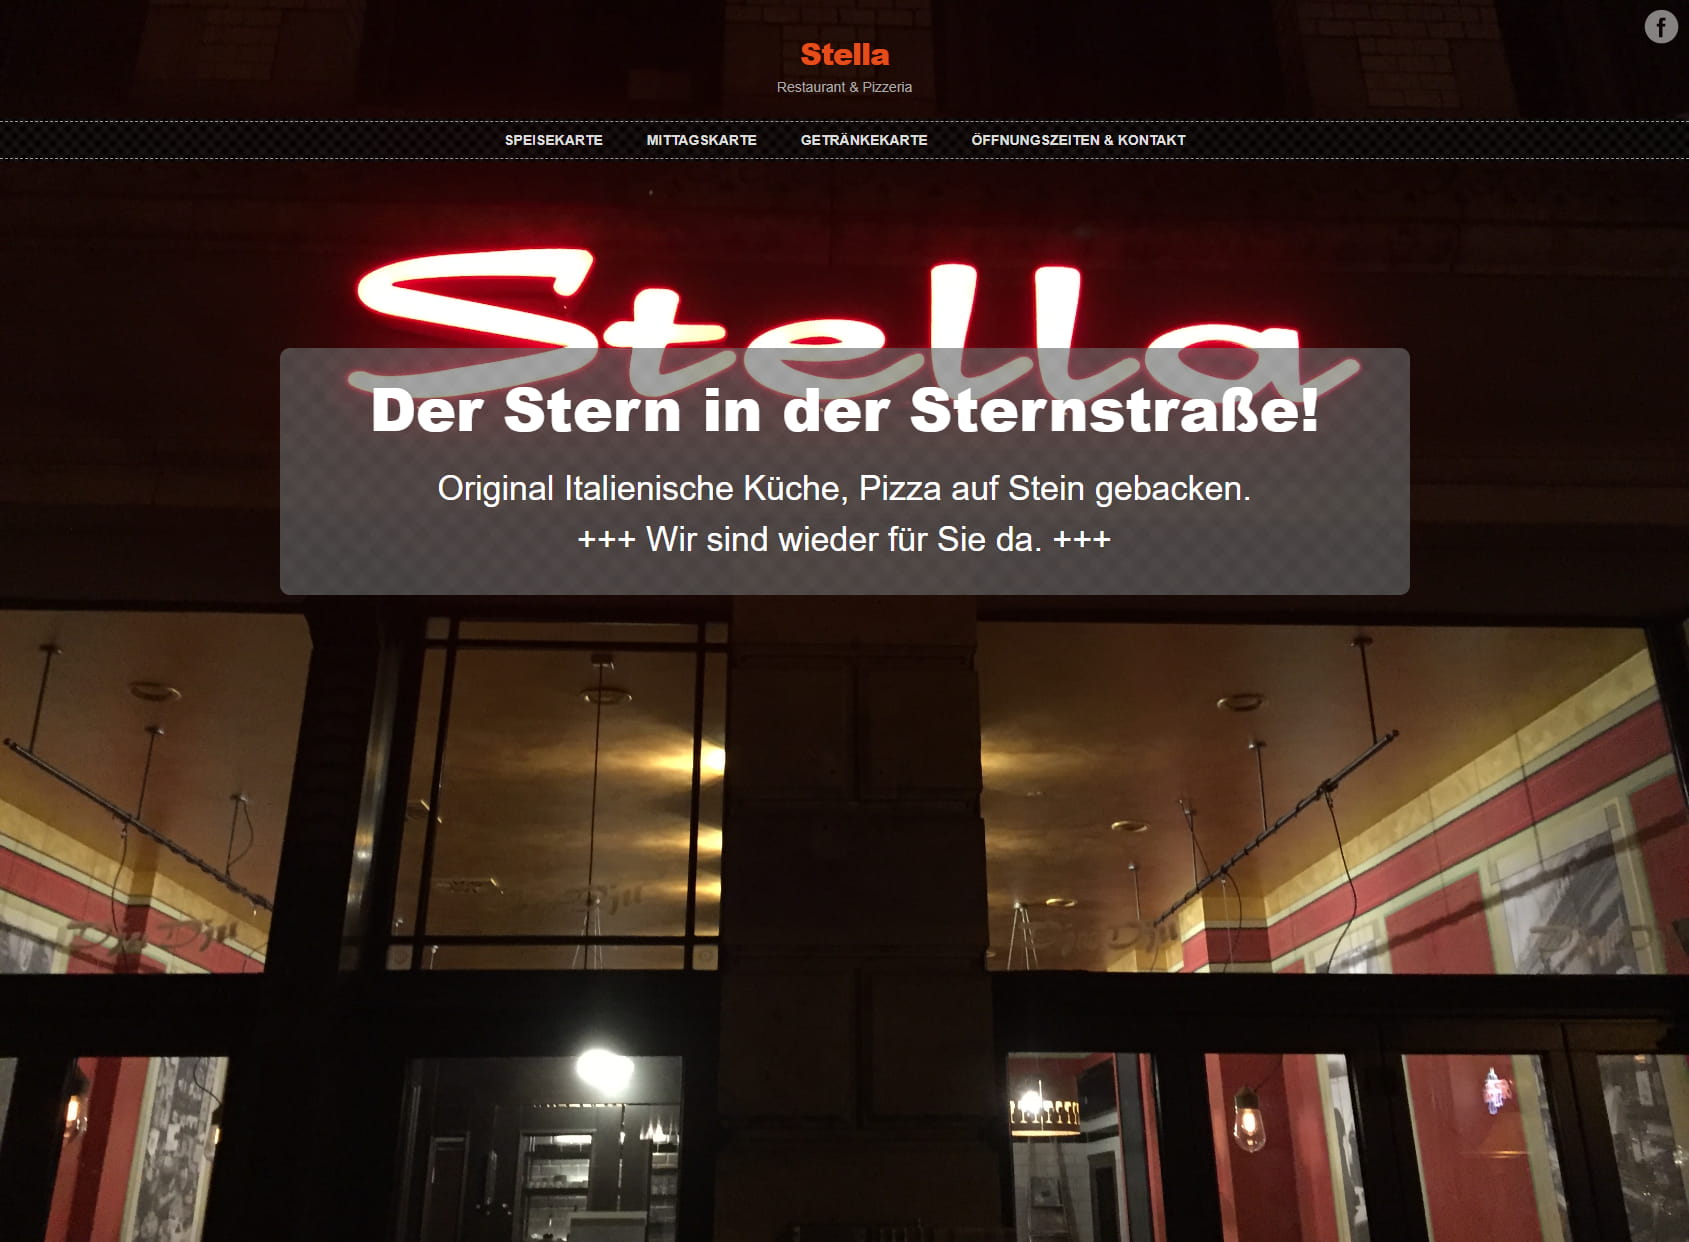 Stella - Restaurant & Pizzeria